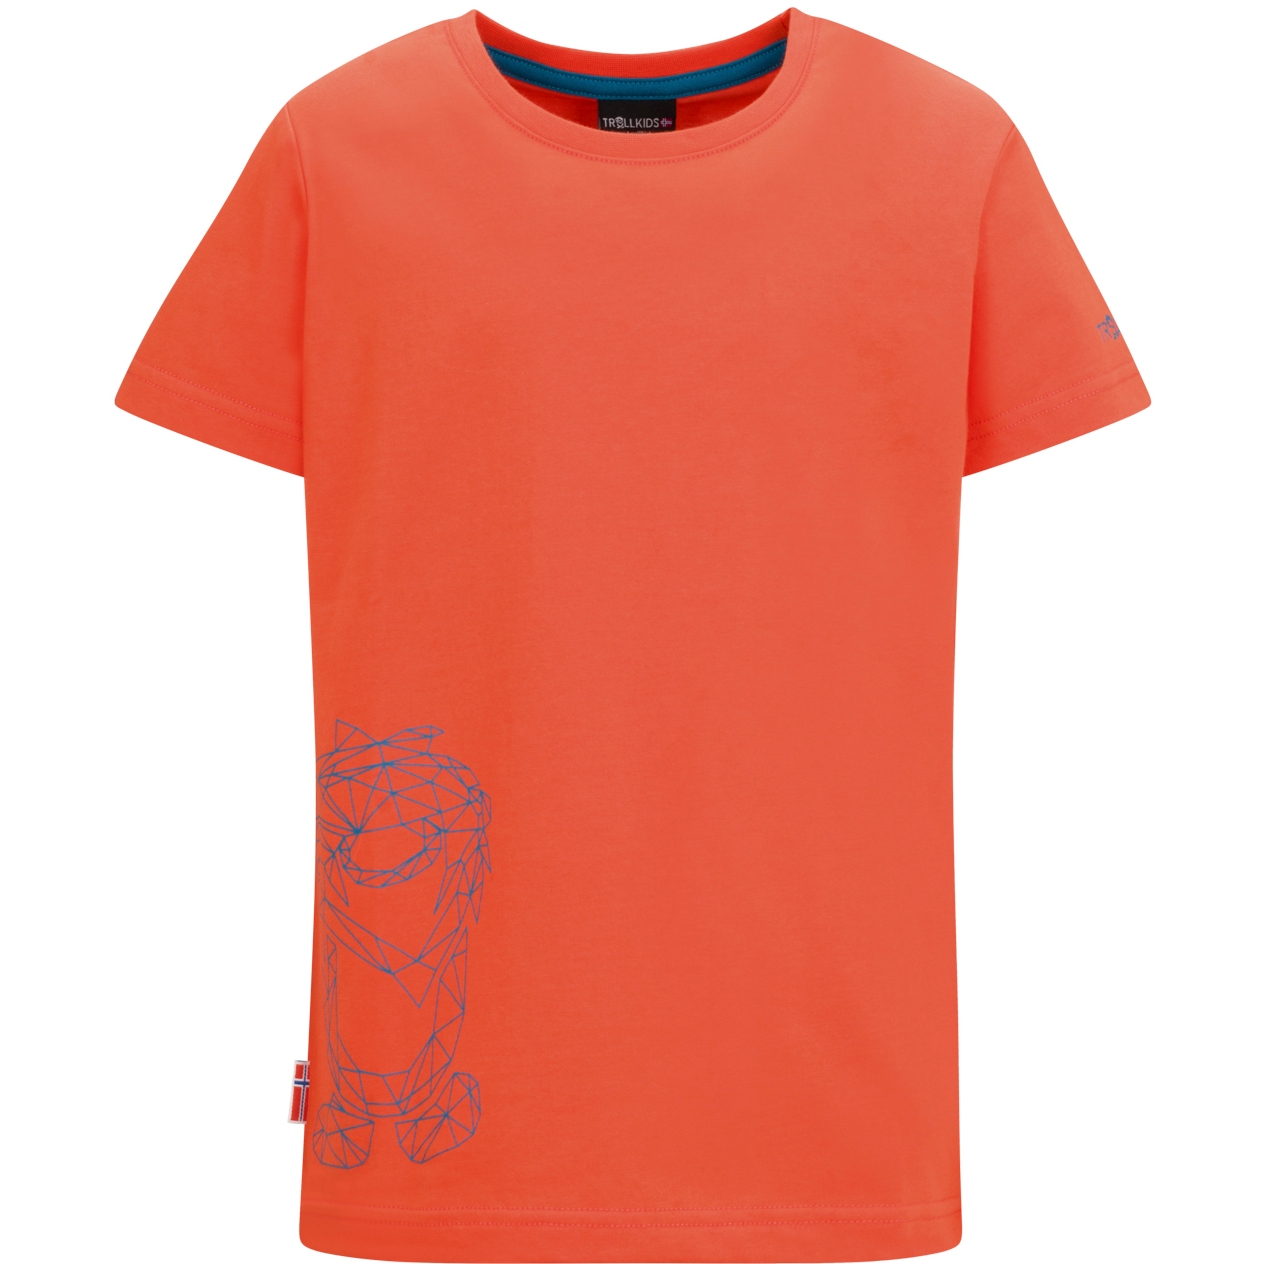 Produktbild von Trollkids Oppland T-Shirt Kinder - glow orange/atlantic blue